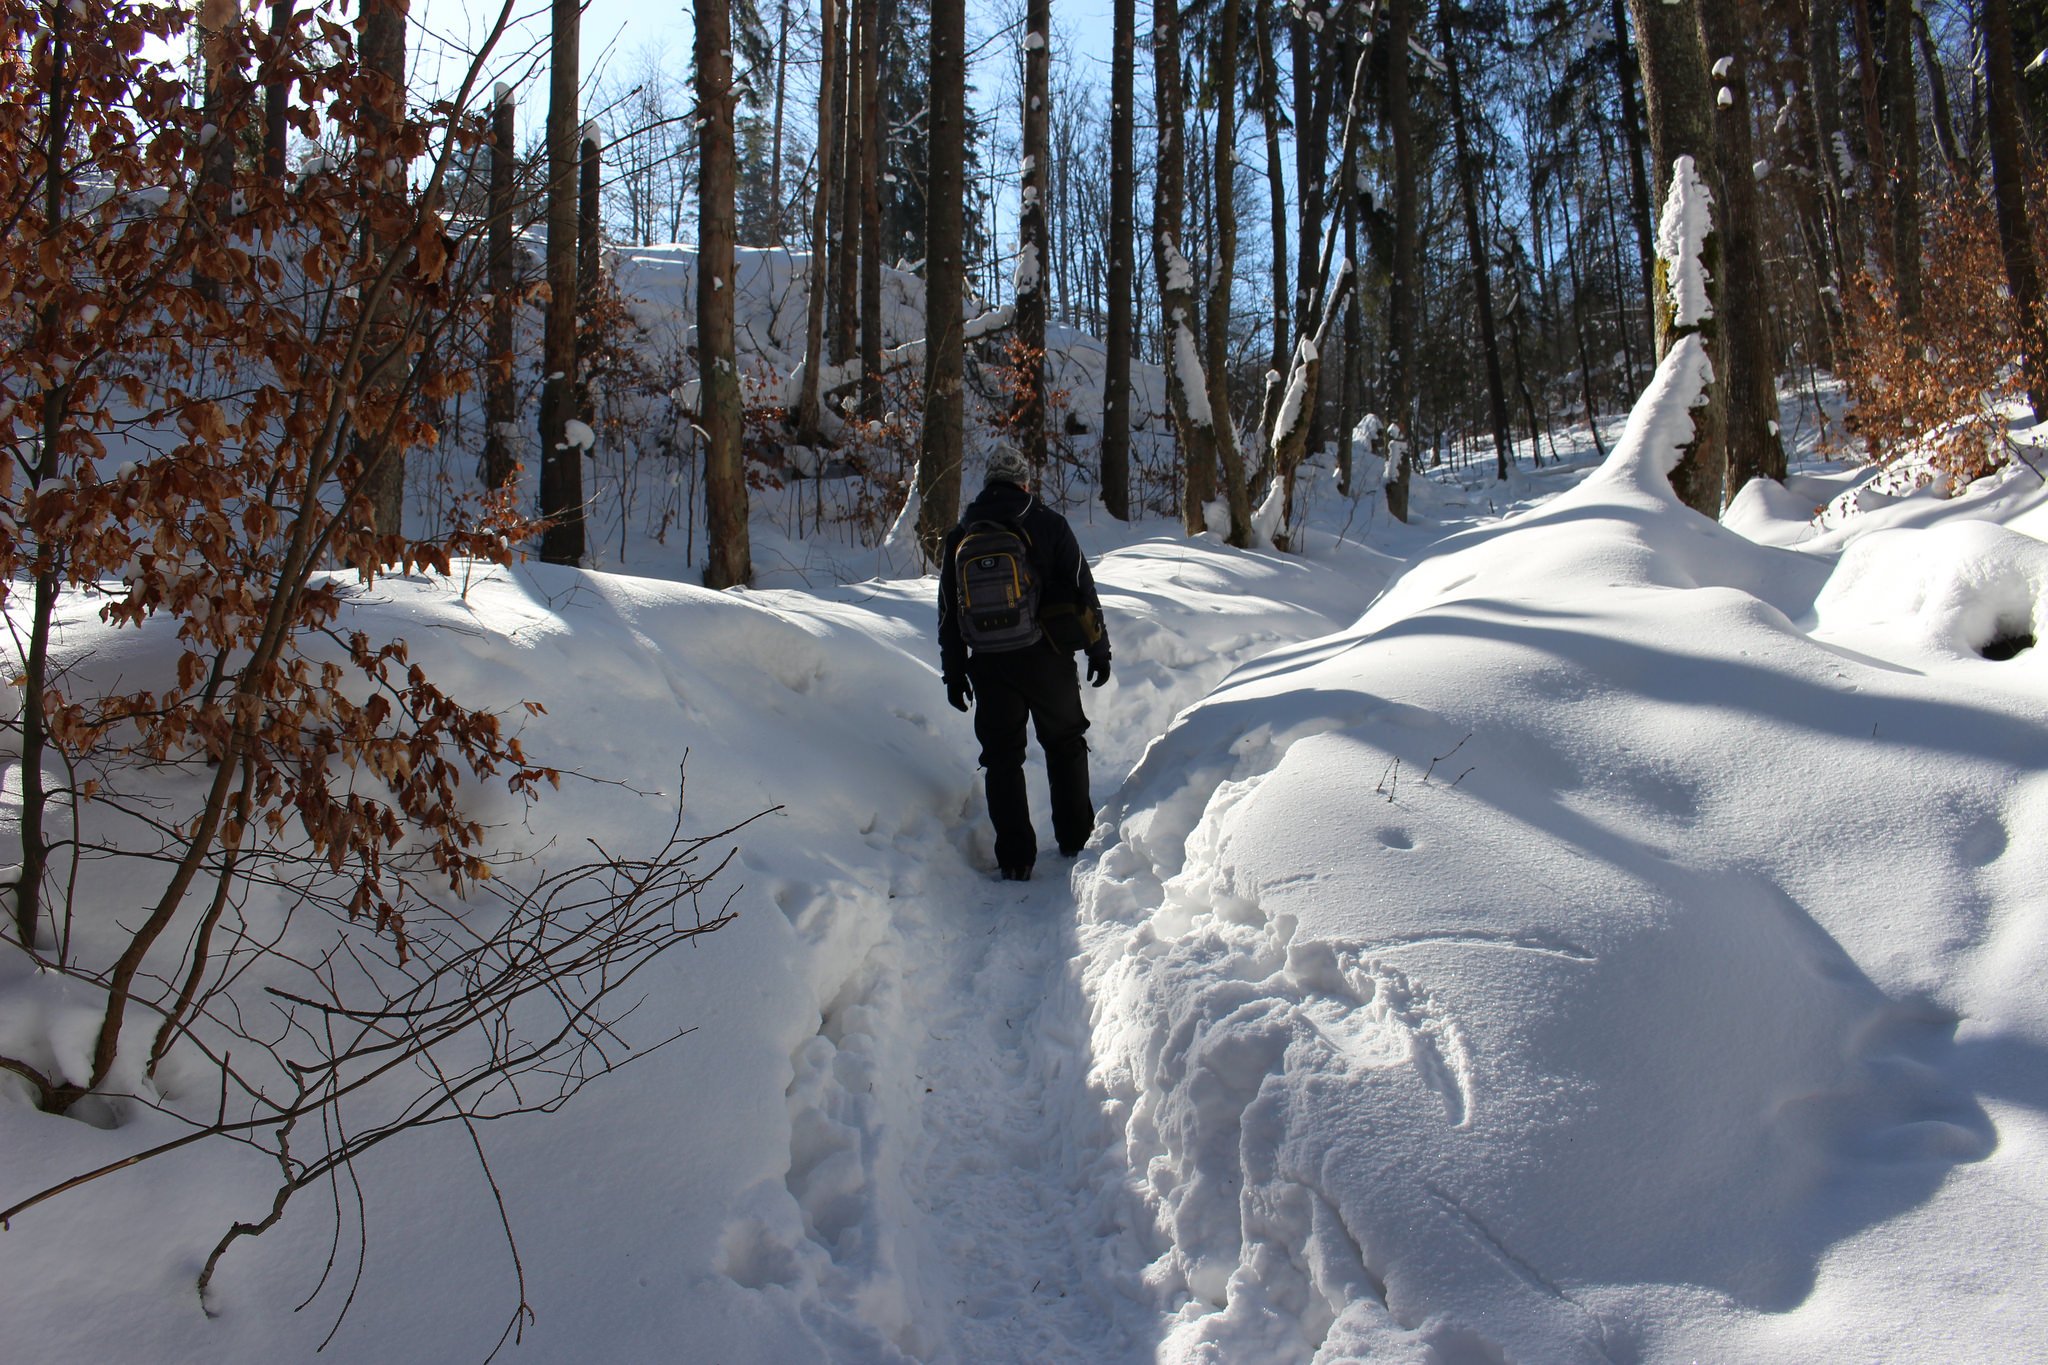 Suchá Belá gorge, winter hiking trip, Košice region, Slovakia – 24